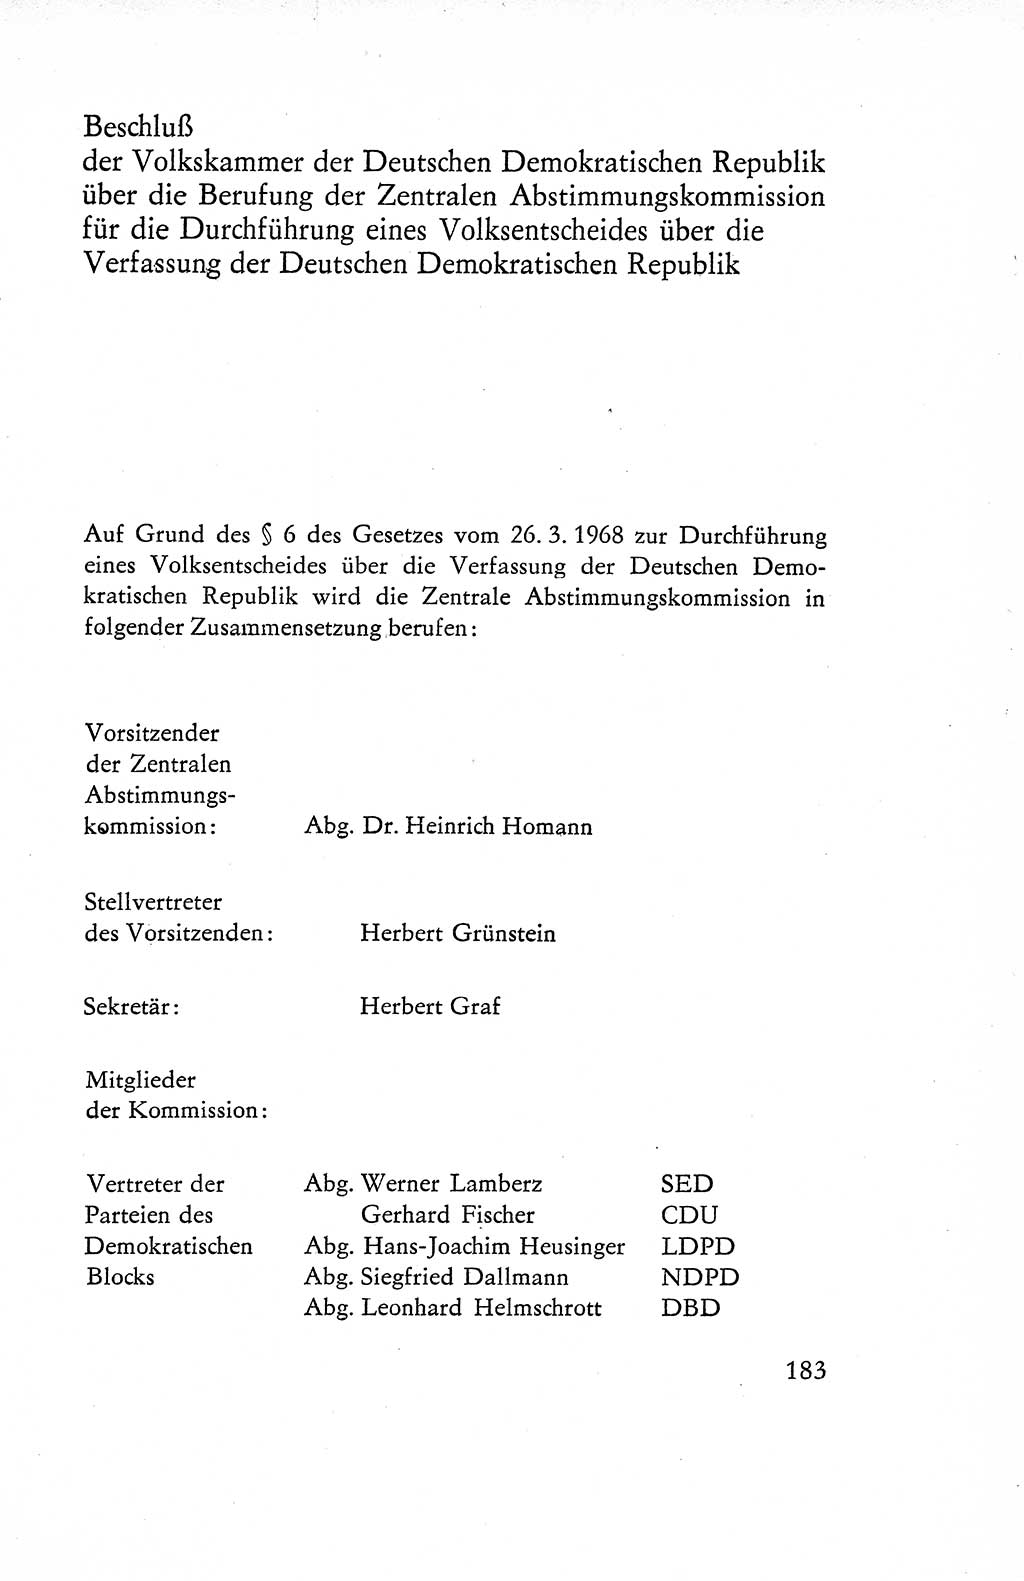 Verfassung der Deutschen Demokratischen Republik (DDR), Dokumente, Kommentar 1969, Band 1, Seite 183 (Verf. DDR Dok. Komm. 1969, Bd. 1, S. 183)